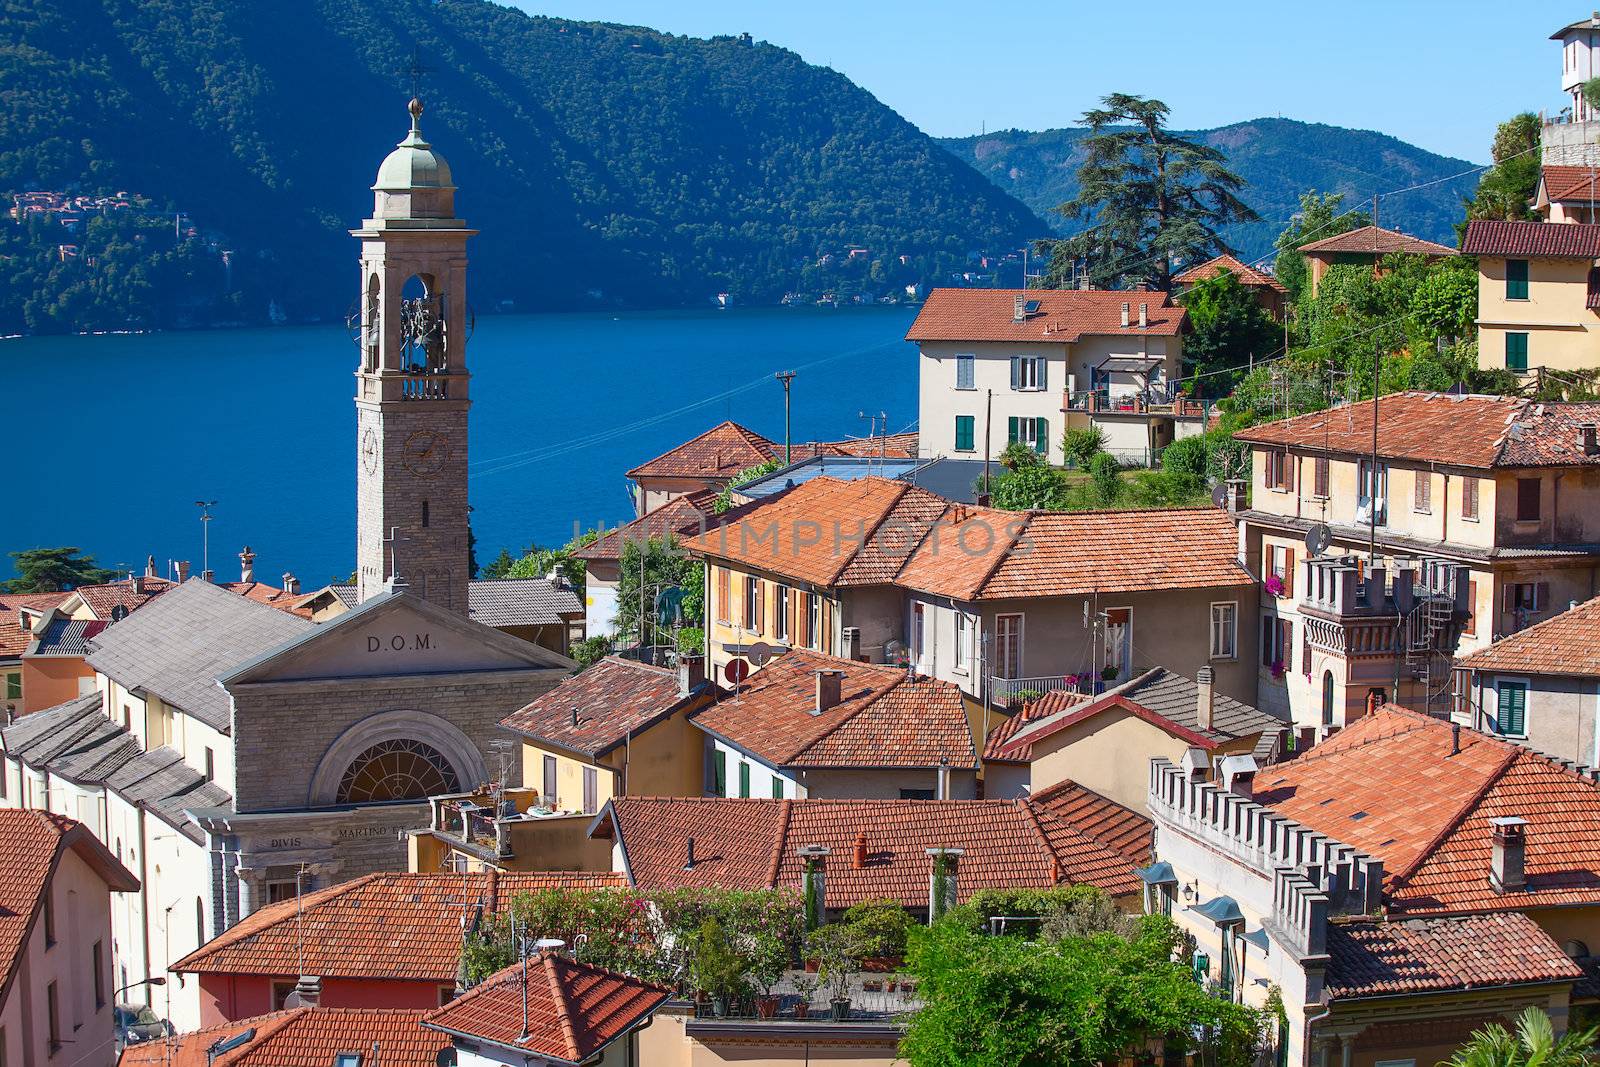 Panoramic view of Cernobbio town (Como lake, Italy)